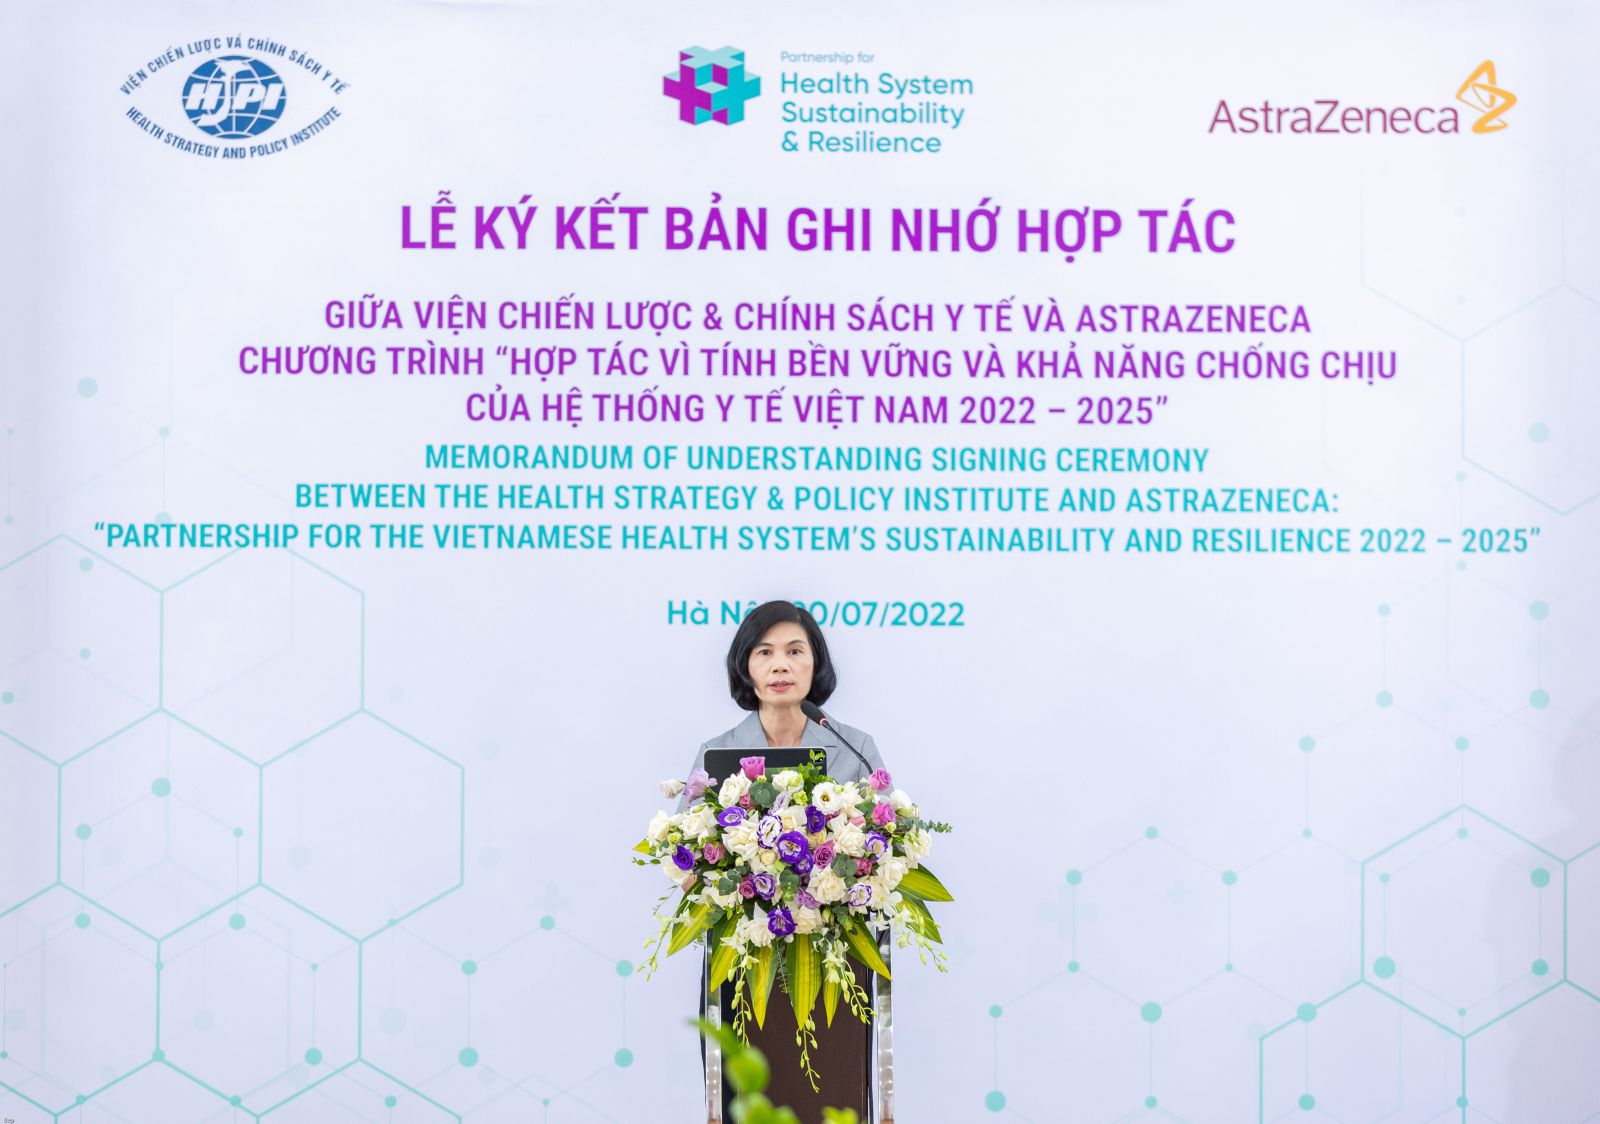 TS. Trần Thị Mai Oanh, Viện trưởng Viện CL&CSYT trình bày khuyến nghị chính sách, kế hoạch và mục tiêu trong giai đoạn mới